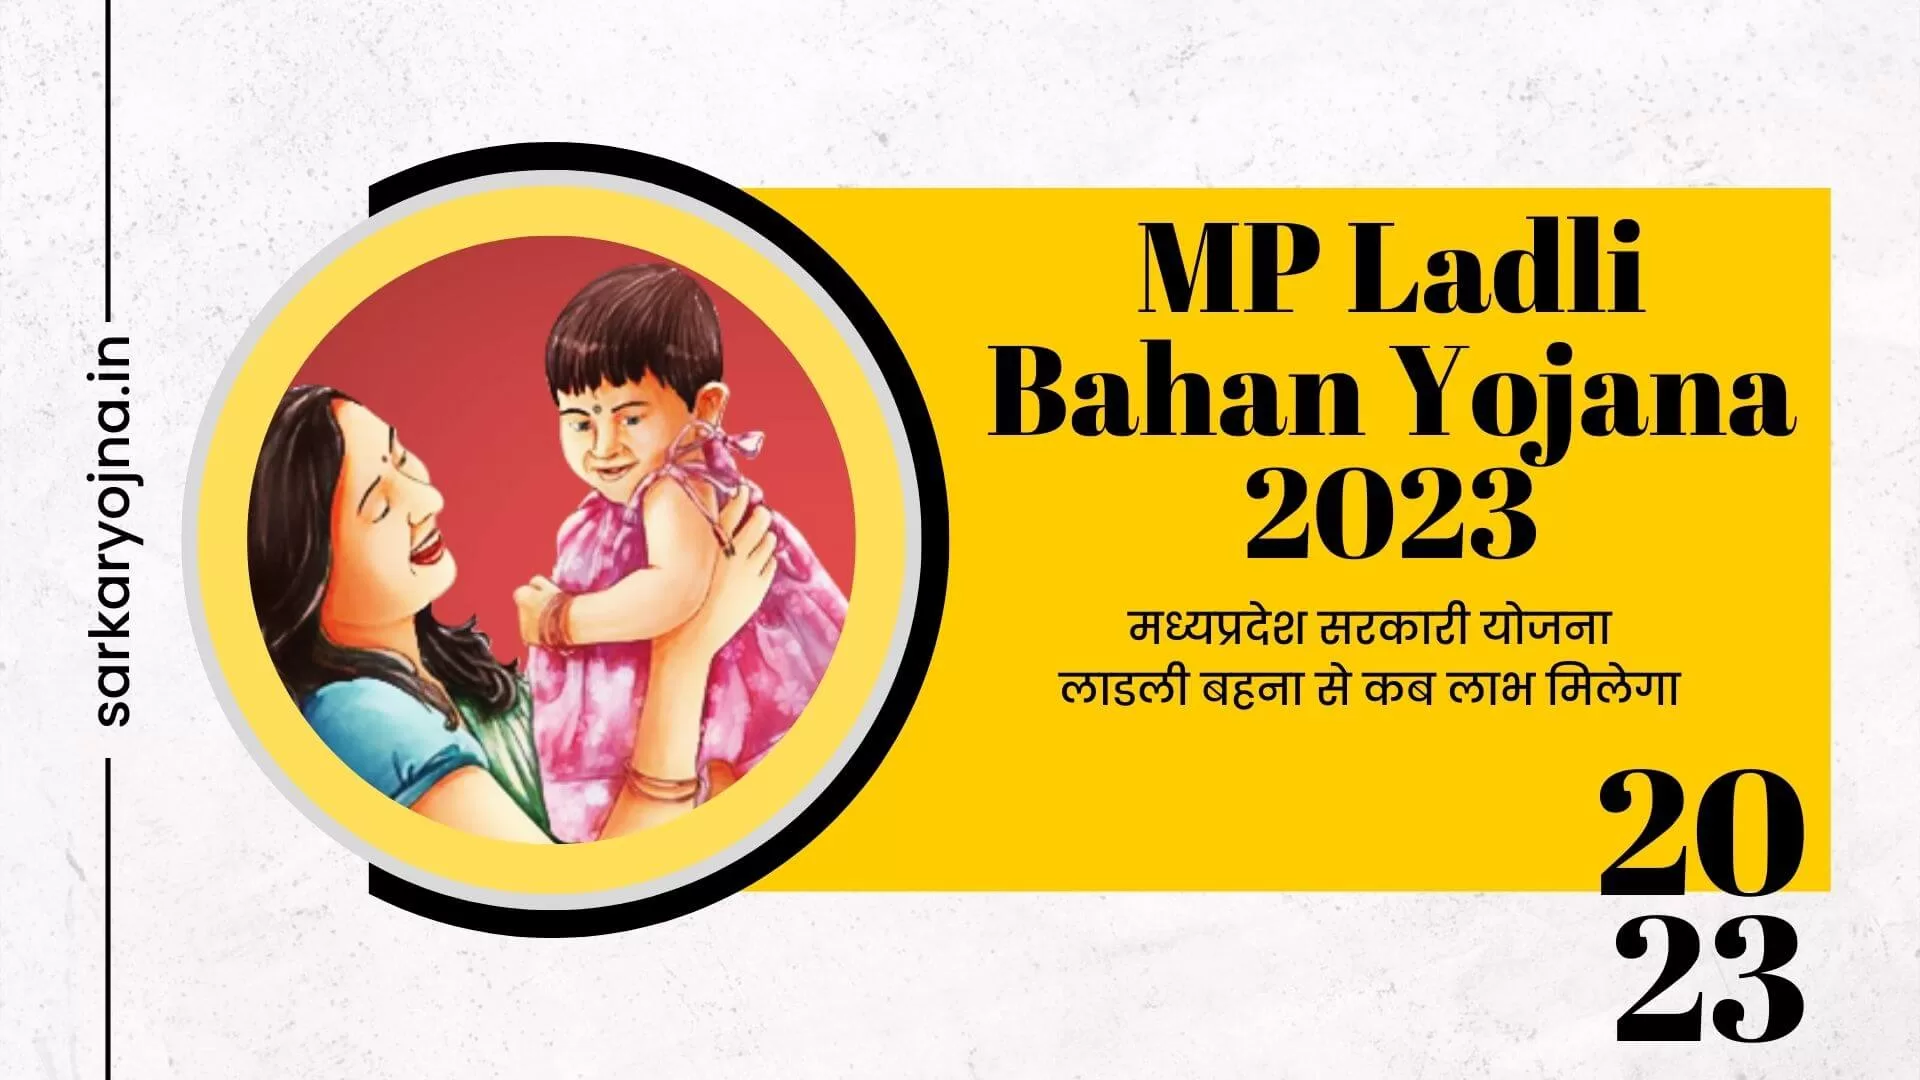 MP Ladli Bahan Yojana 2023